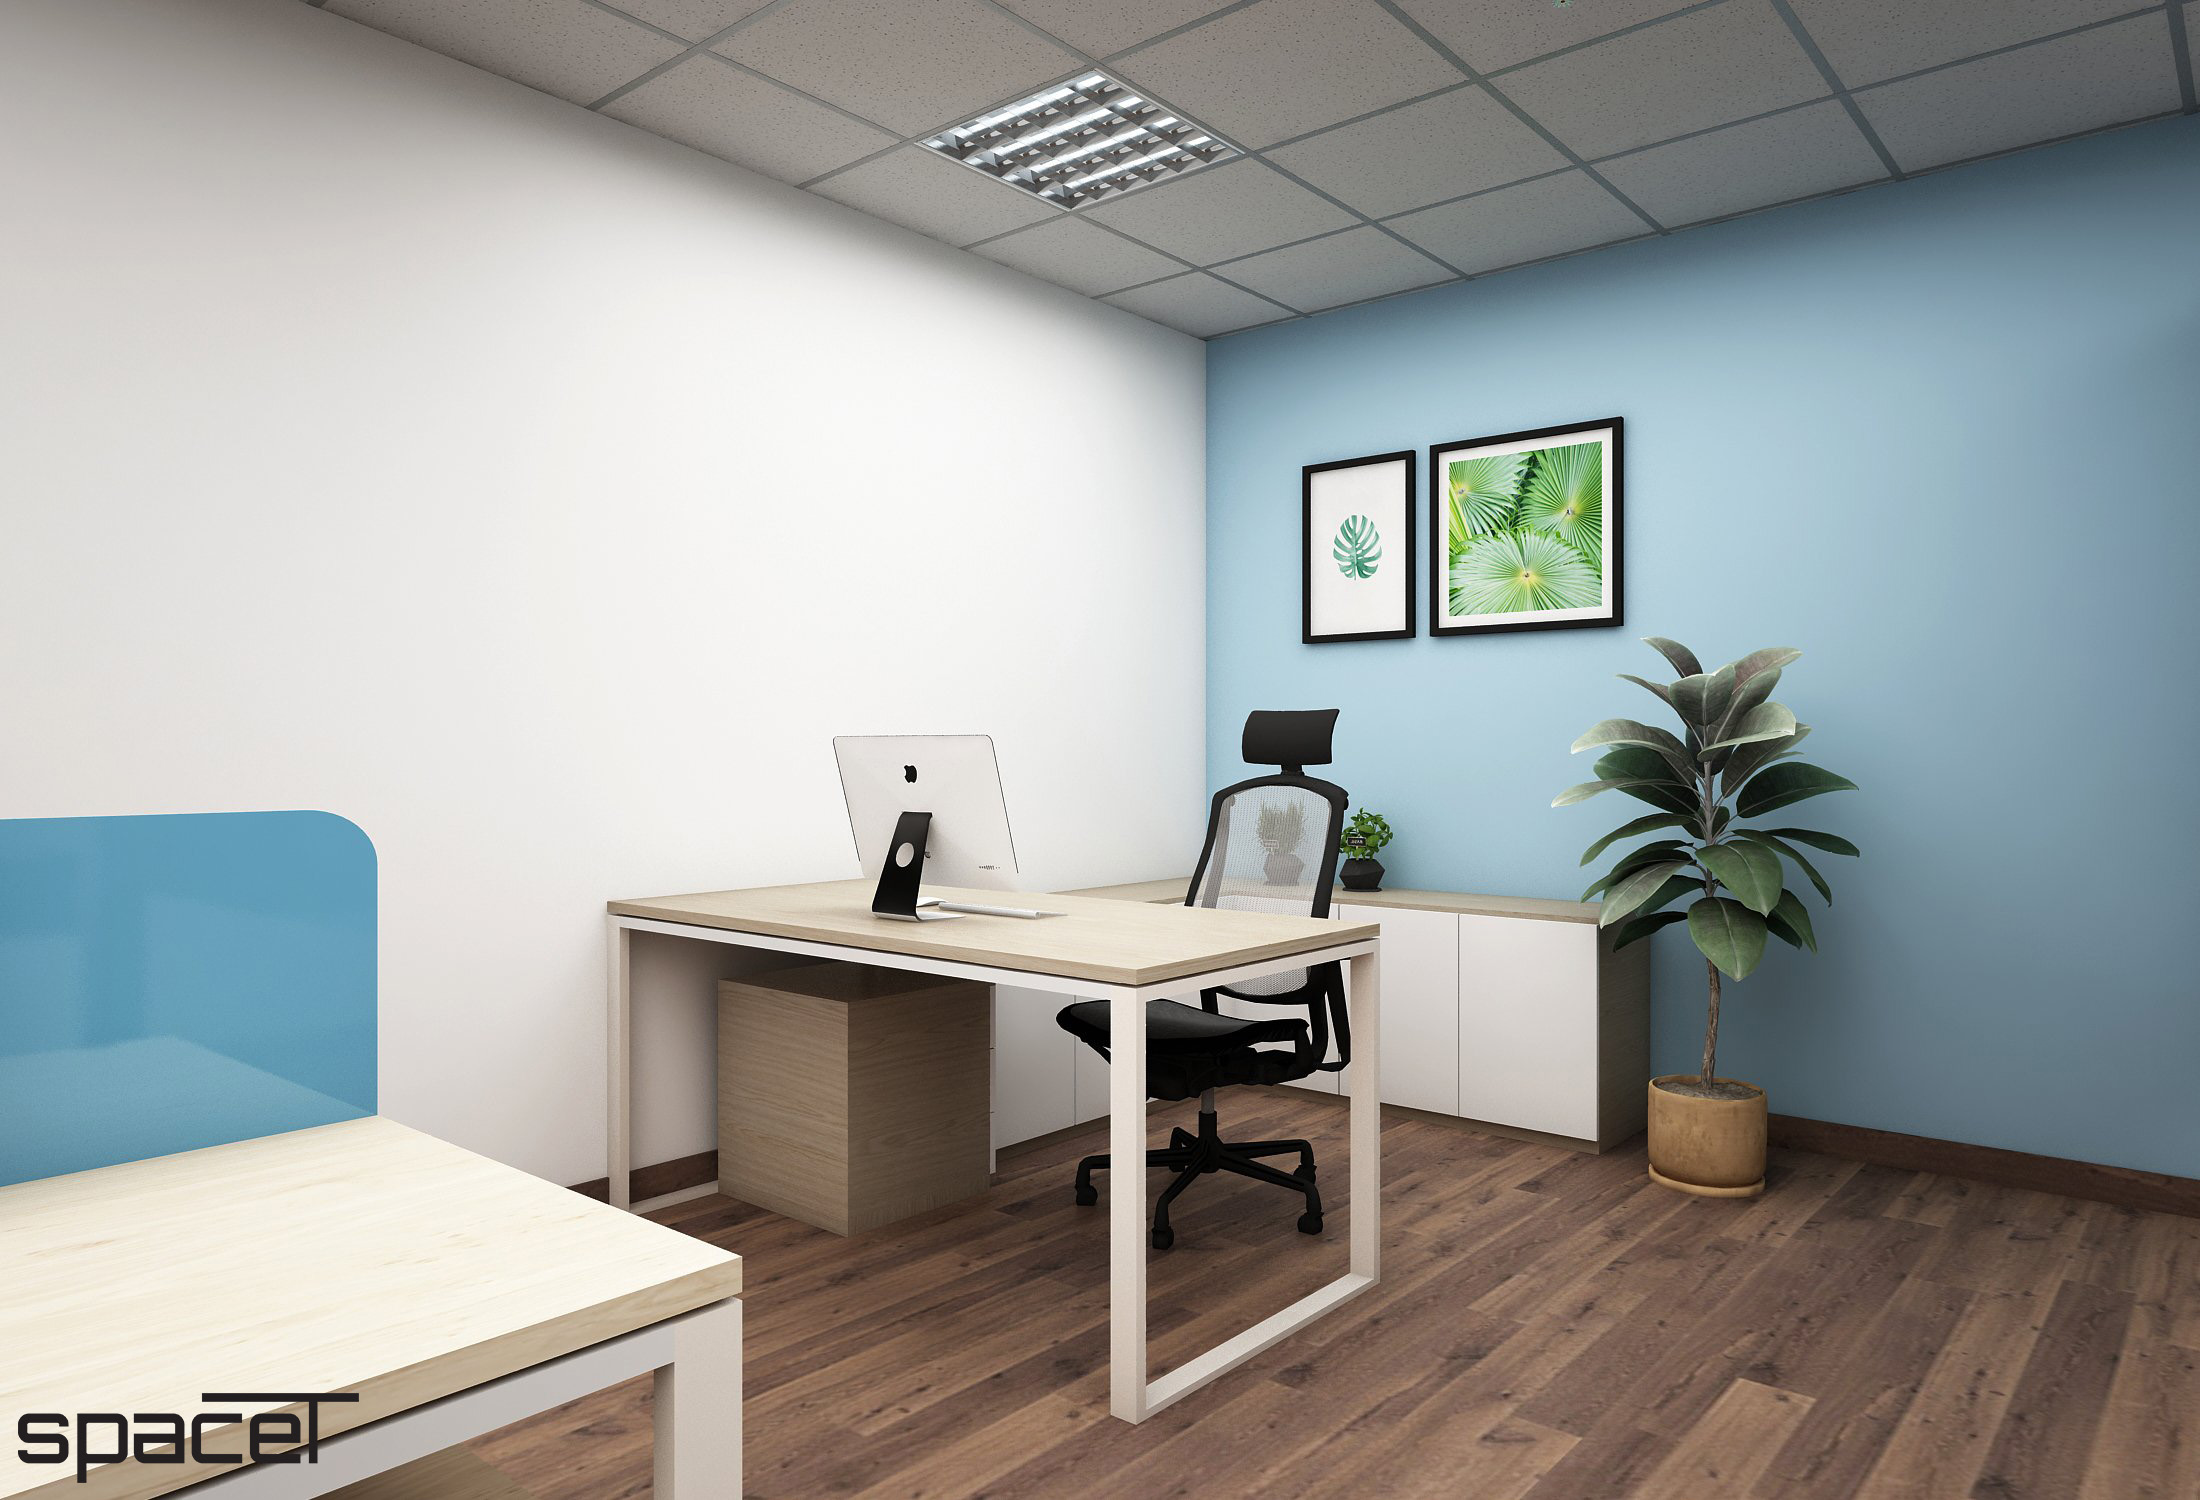 Khu vực làm việc, thiết kế concept nội thất, văn phòng công ty CNW